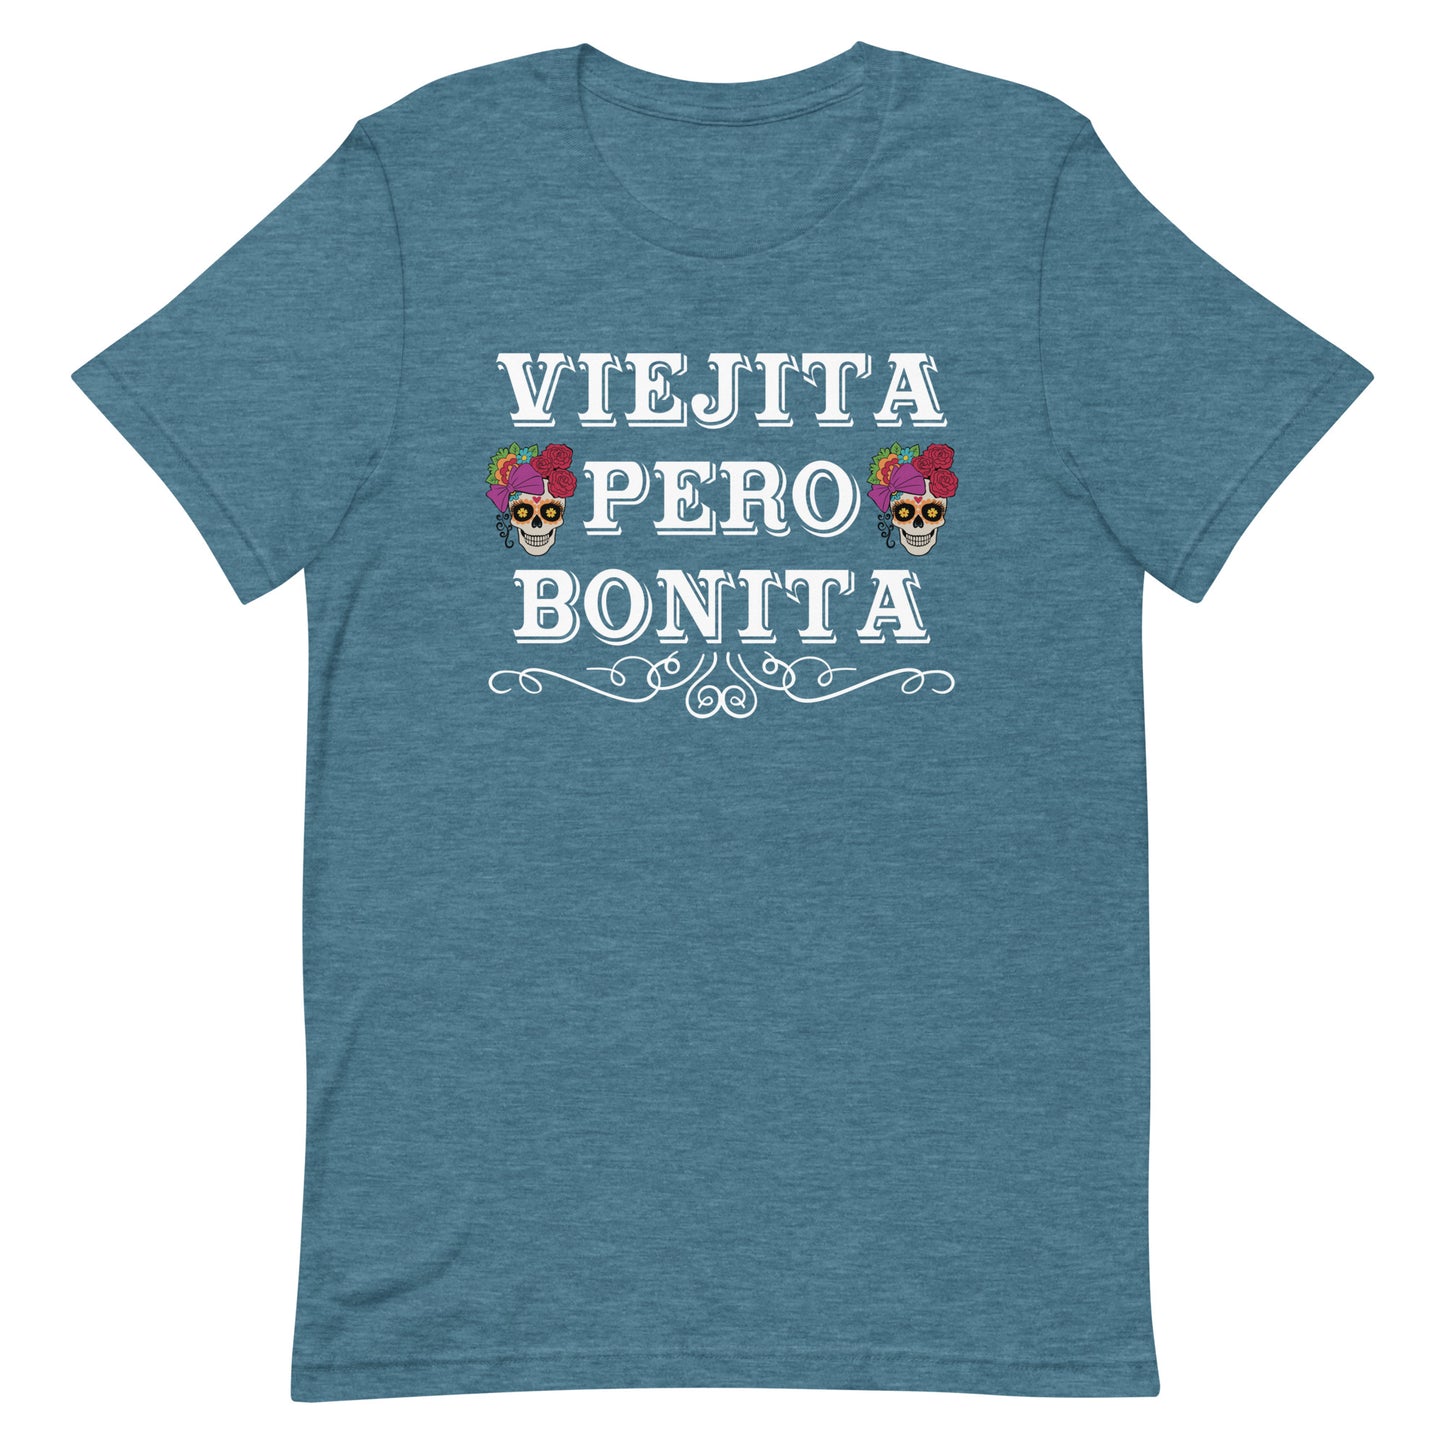 Viejita Pero Bonita T-Shirt